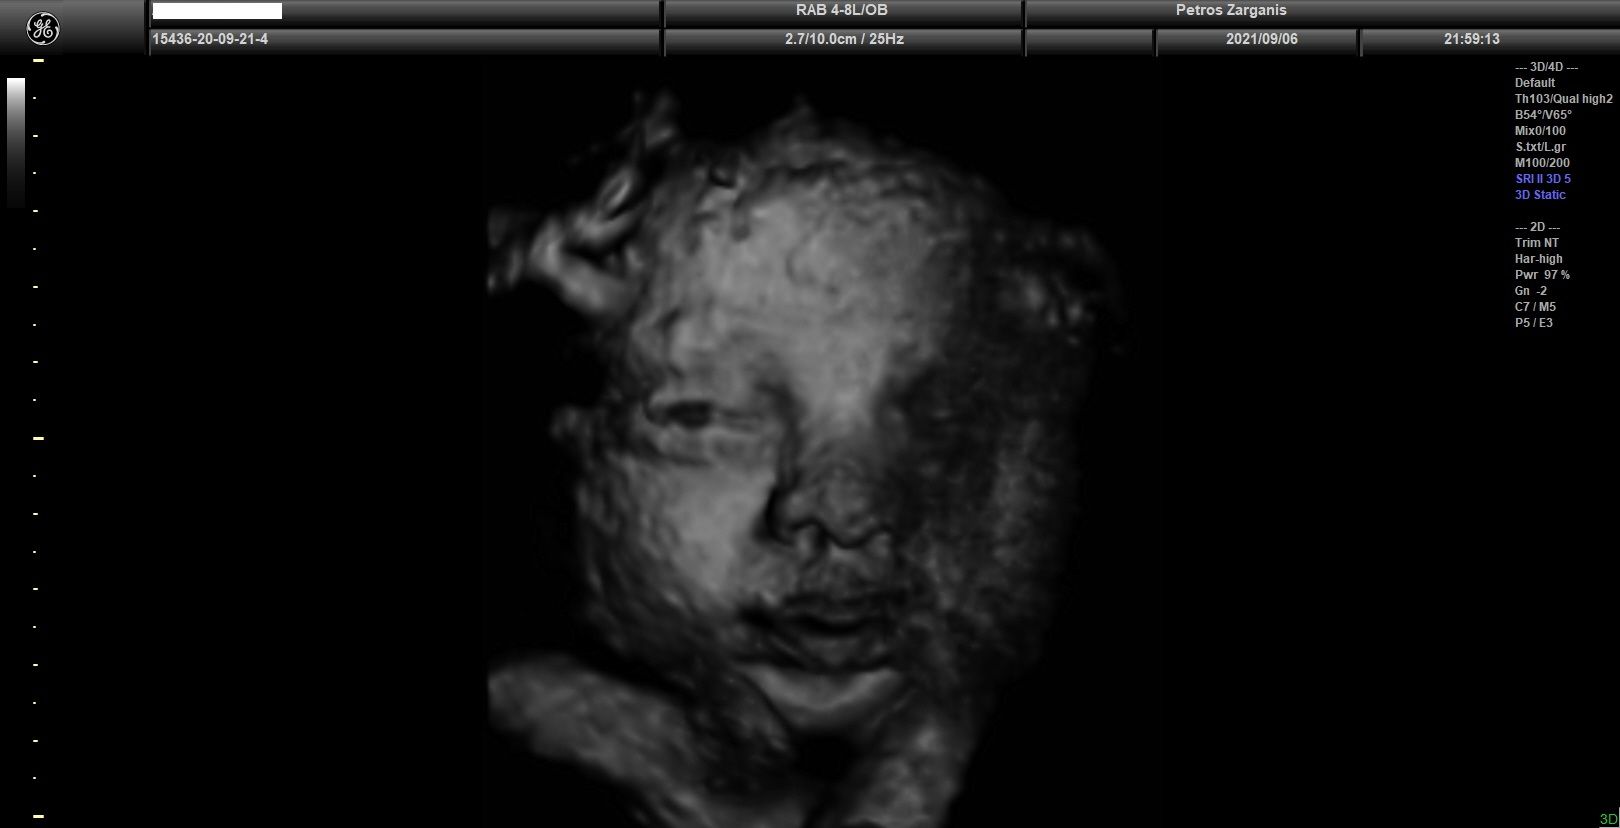 Εμβρυο 33 εβδομάδων + 4  ημερών με ανοικτά τα μάτια (το ένα φαίνεται μόνον) [1]